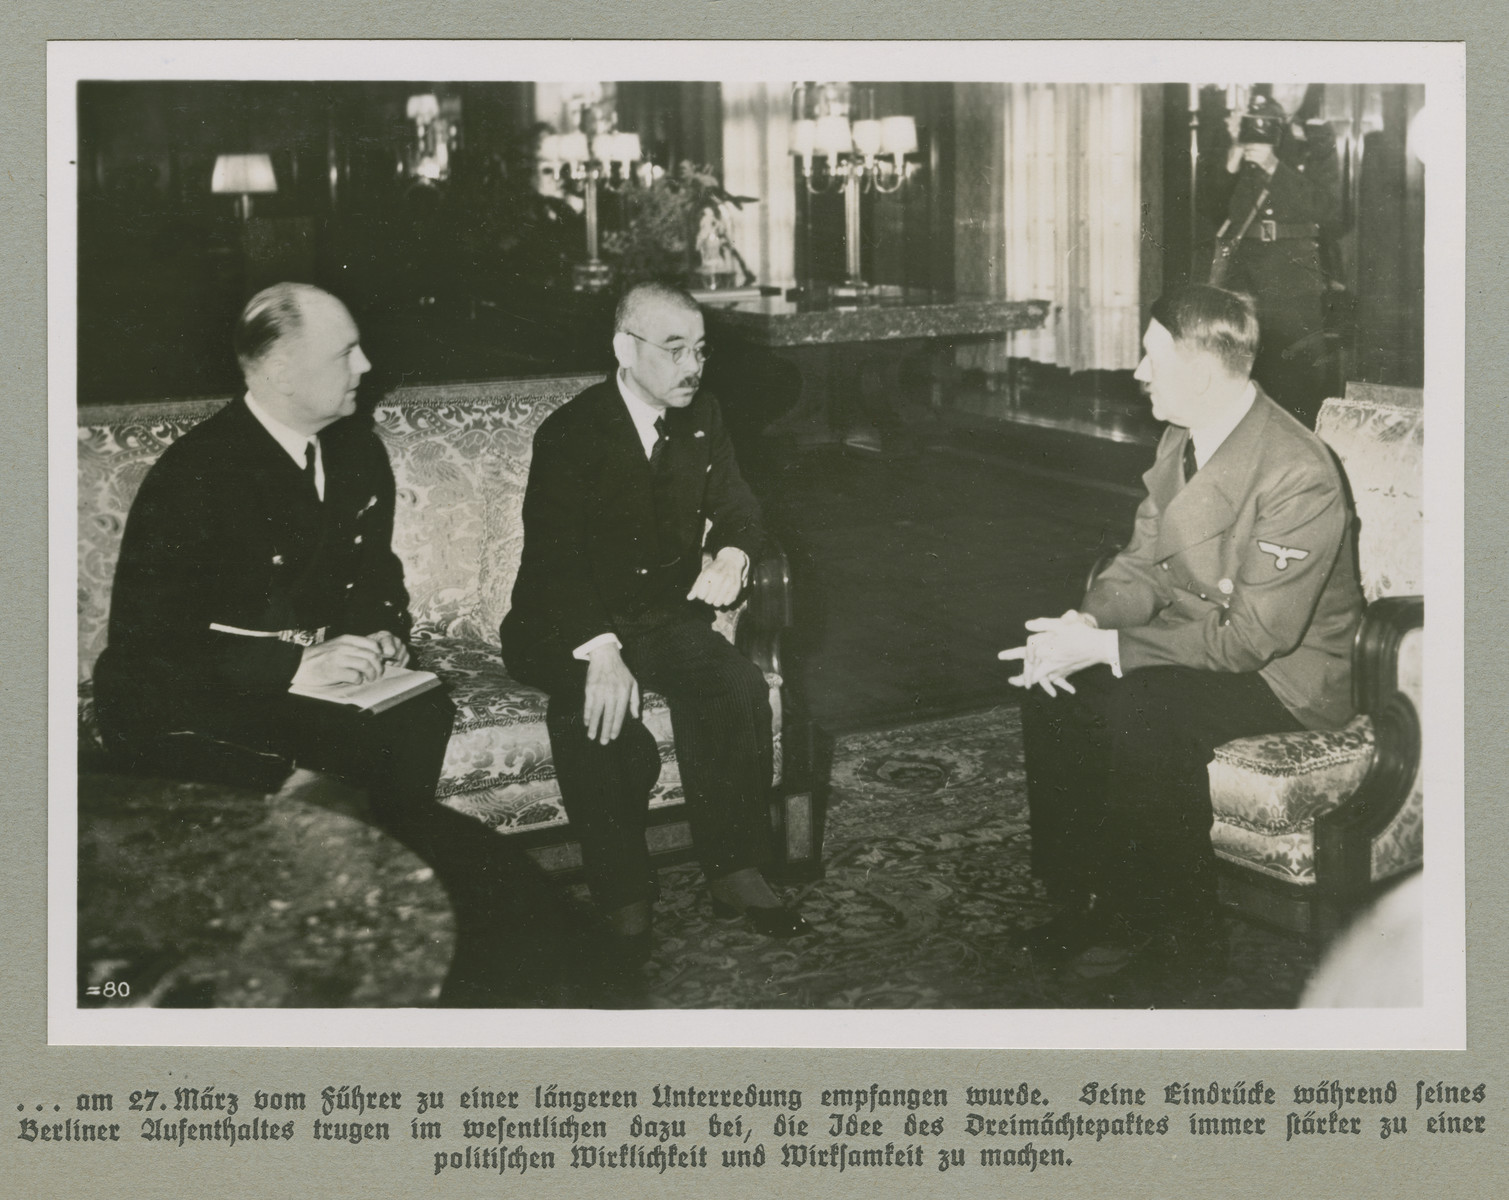 [בתמונה: אדולף היטלר נפגש עם שר החוץ של יפן אדולף היטלר (מימין), יוסוקה מטסוקה (במרכז) והמתורגמן ד"ר פול אוטו שמידט (משמאל), ב- 31 במרץ 1941. קרדיט: מוזיאון הזיכרון לשואה של ארצות הברית]